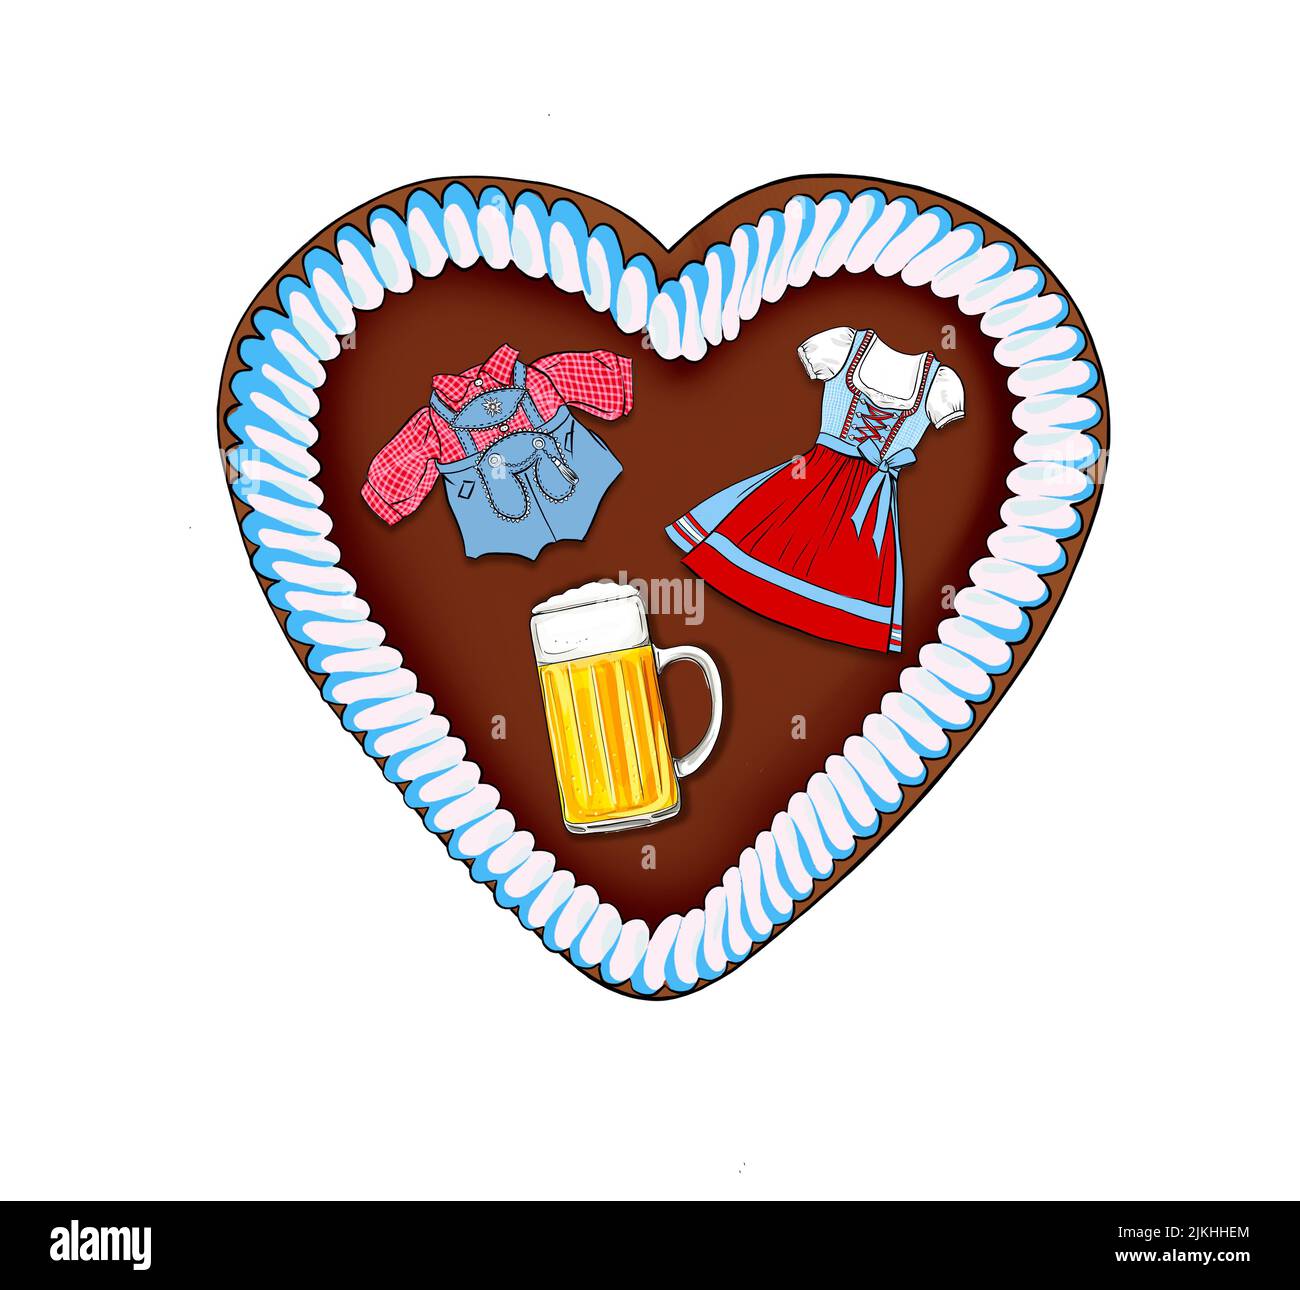 Ilustración, Oktoberfest pan de jengibre corazón con dirndl, lederhosen y cerveza Foto de stock